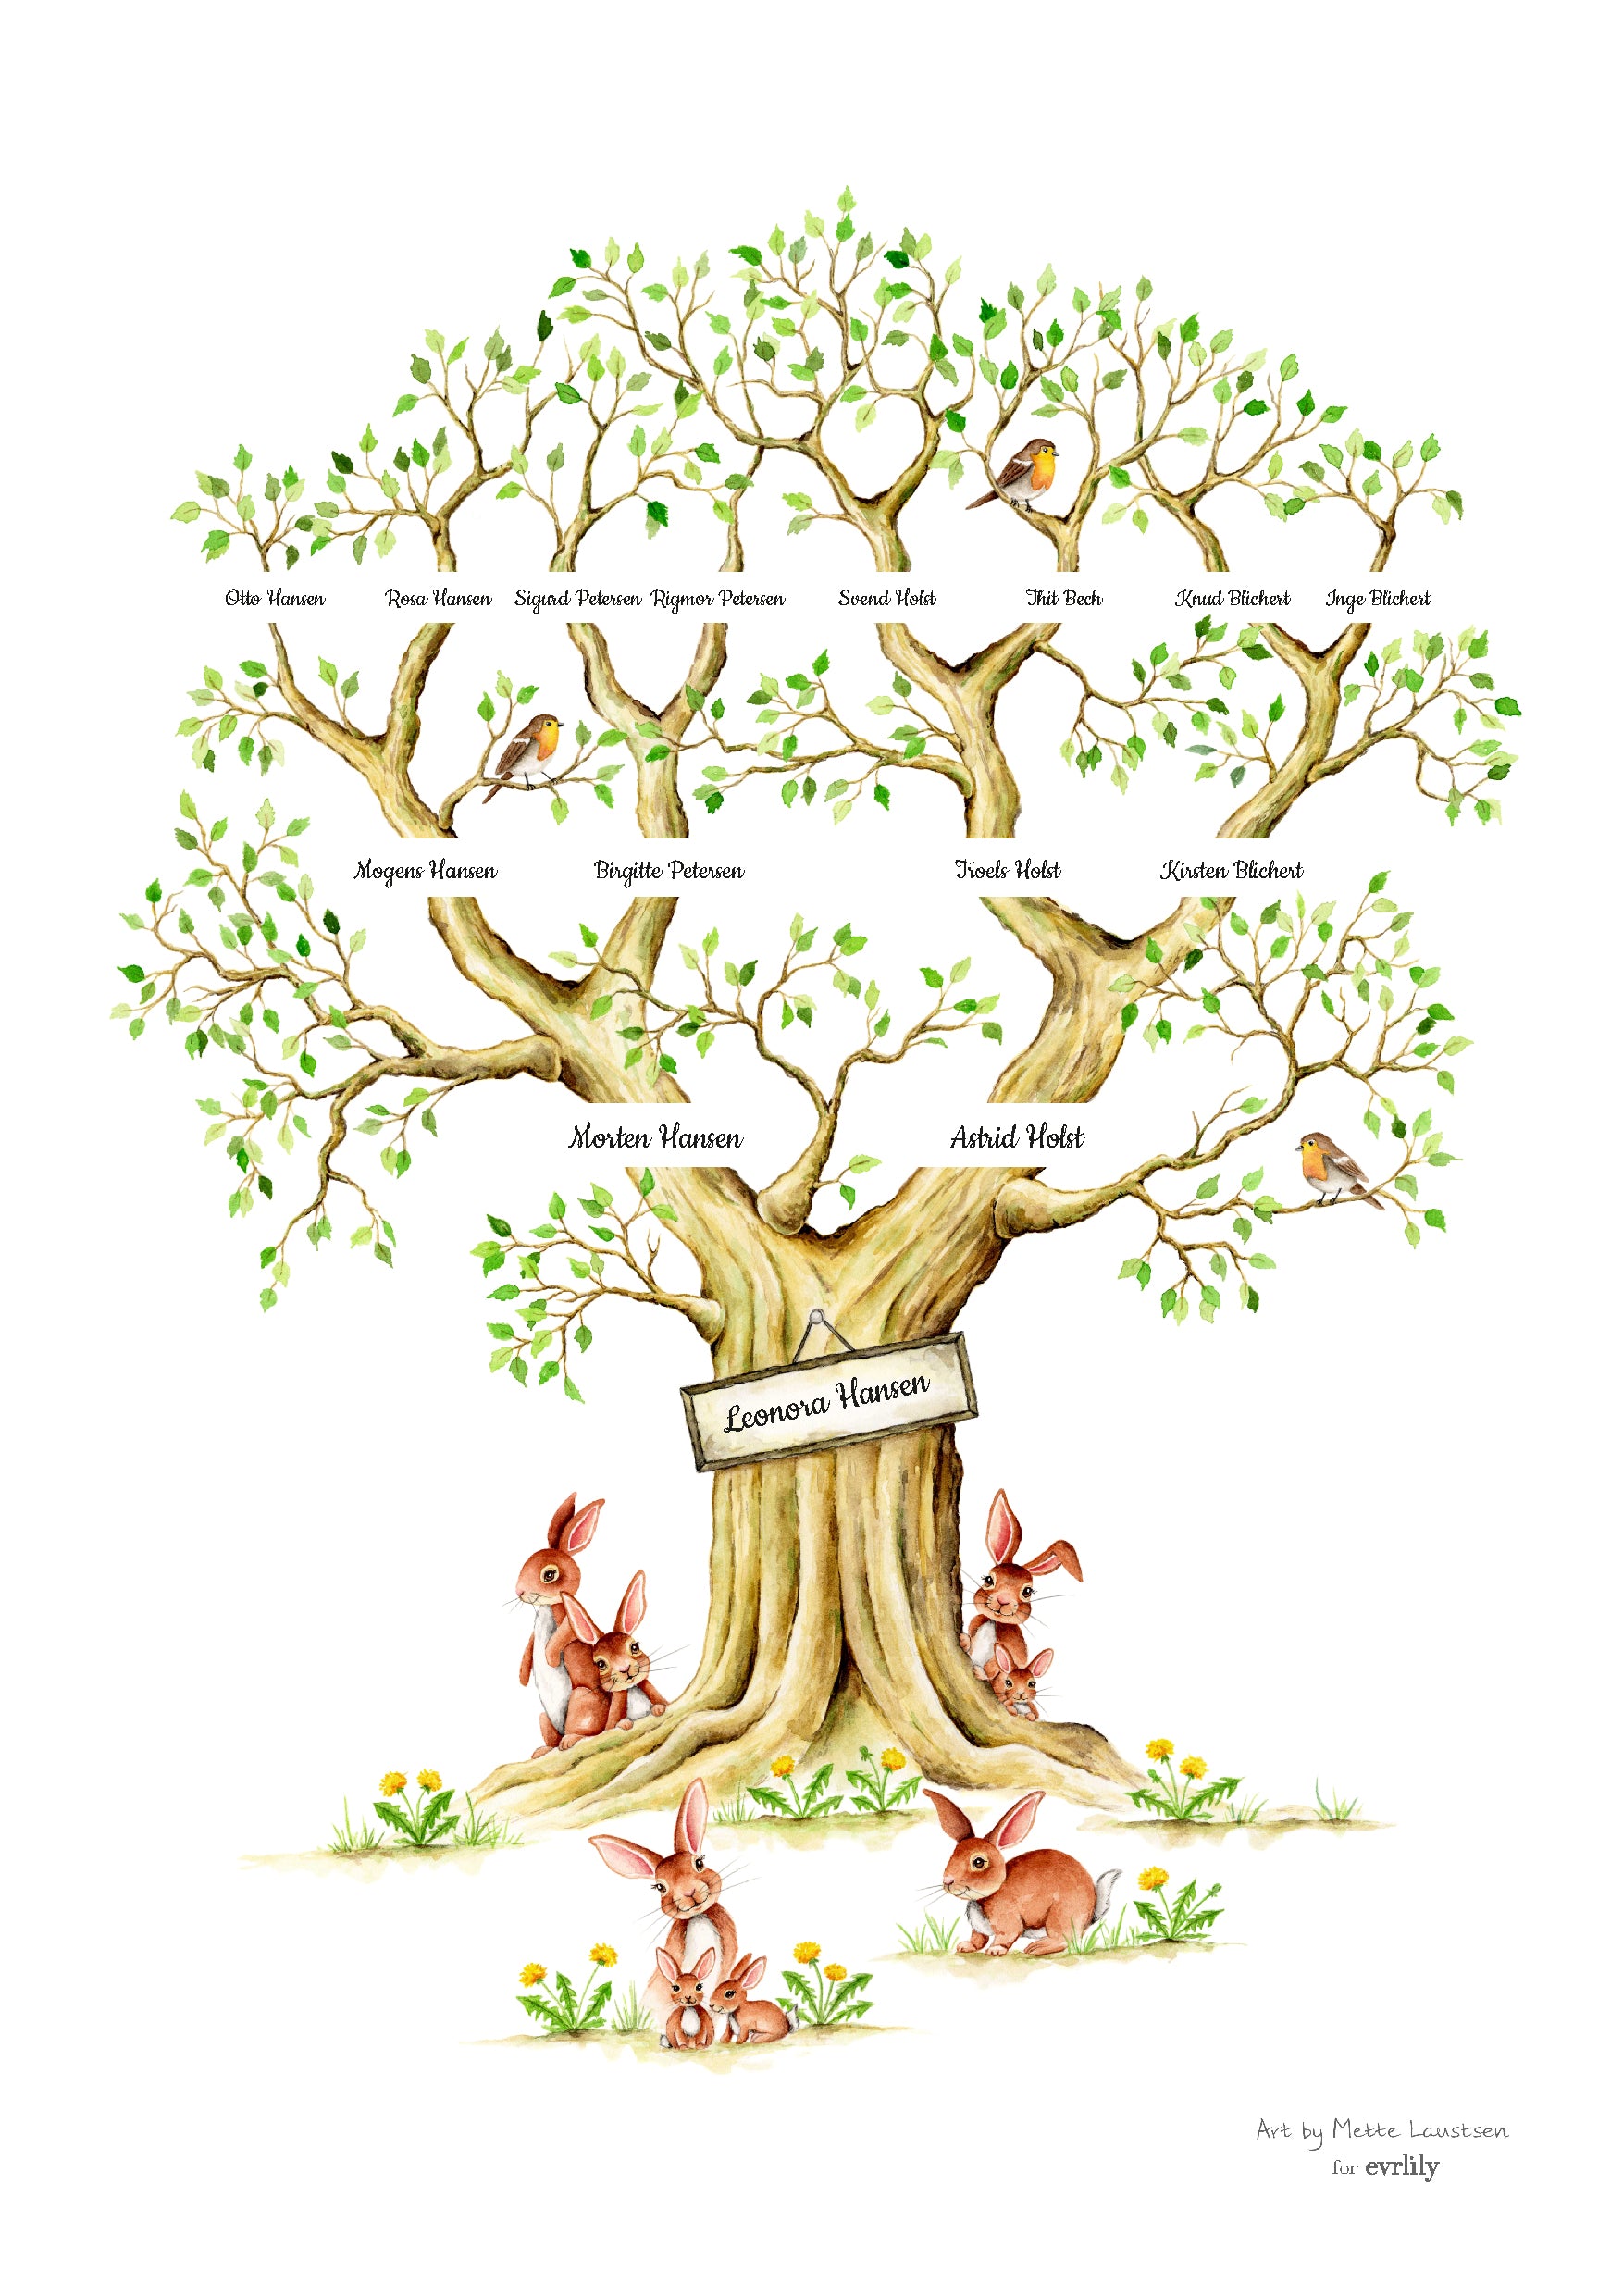 A3 stamtræ personlig plakat med træramme af Art by Mette Laustsen familieplakat akvarel generationstræ lav dit eget stamtræ 